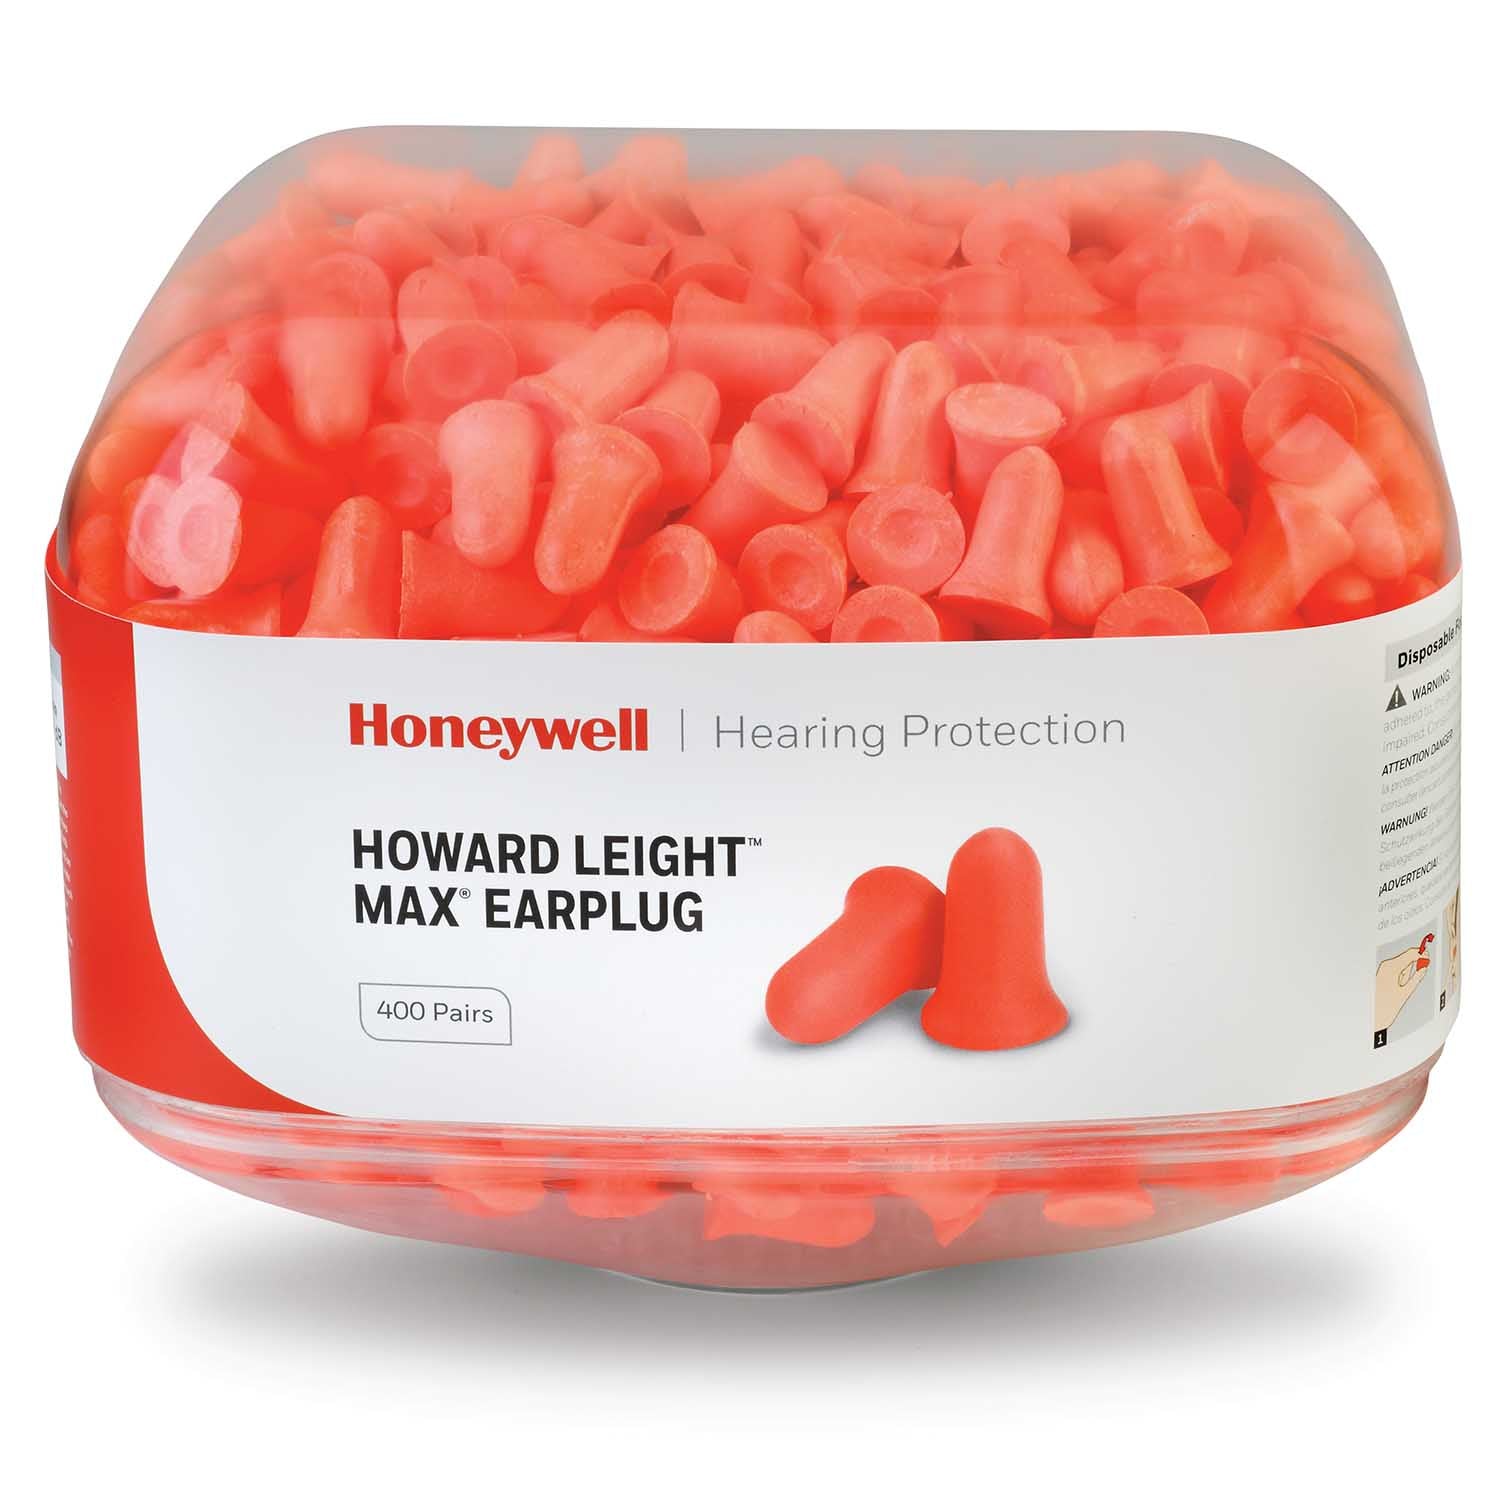 Honeywell Howard Leight Max Earplug Refill Canister for HL400 Dispenser 